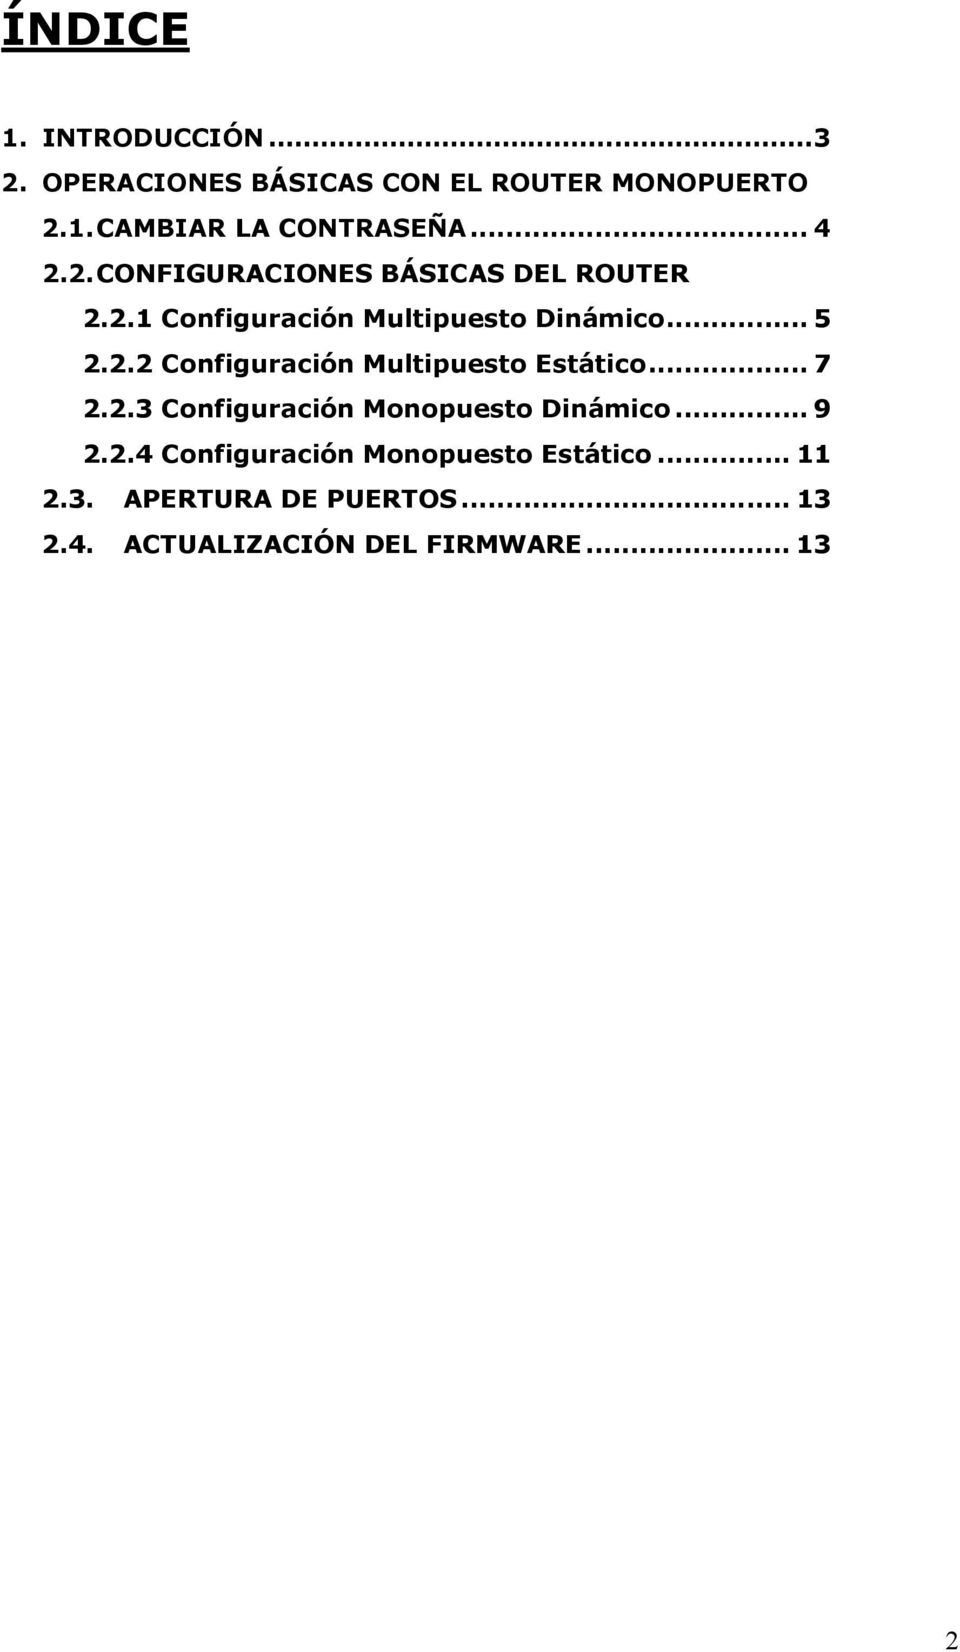 .. 7 2.2.3 Configuración Monopuesto Dinámico... 9 2.2.4 Configuración Monopuesto Estático... 11 2.3. APERTURA DE PUERTOS.